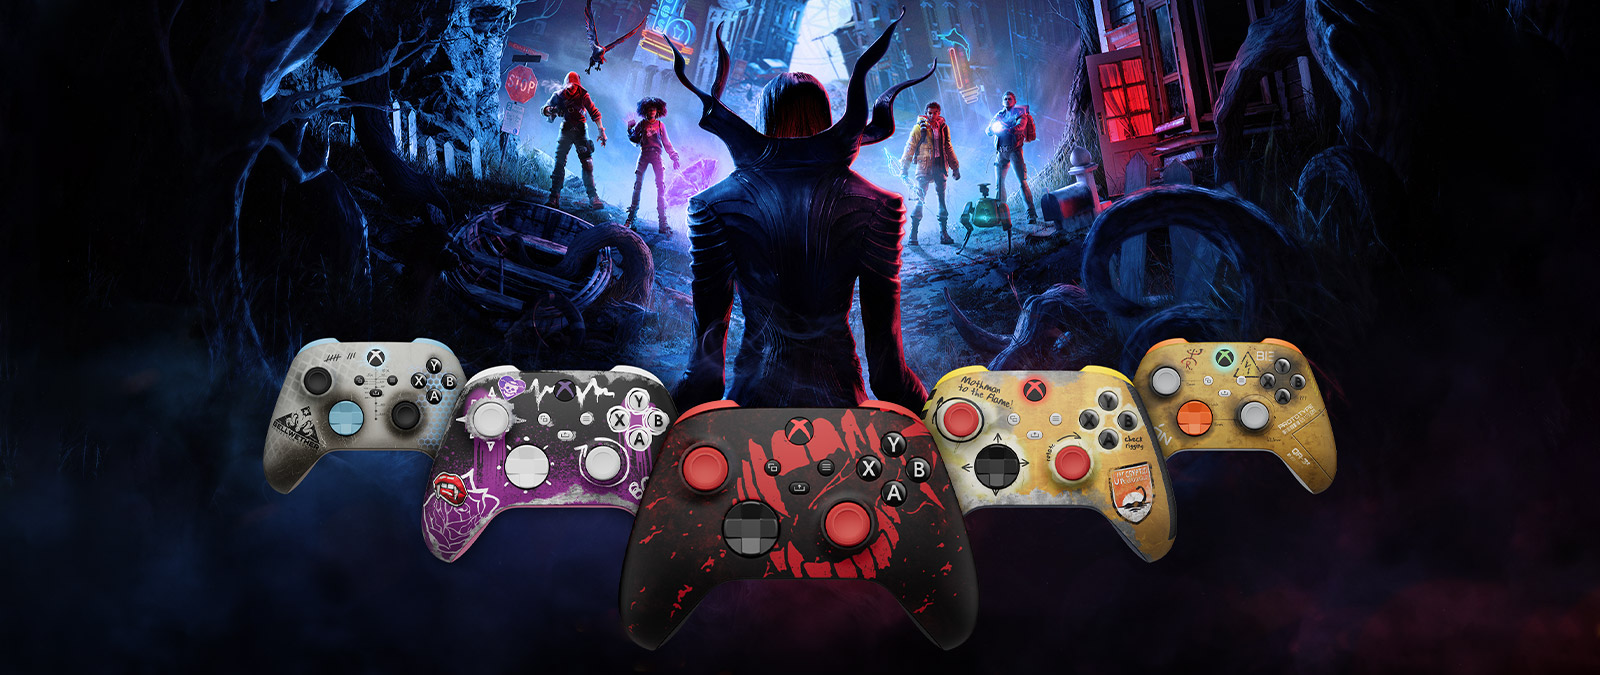 Verschillende kleurrijke controllers met een afbeelding van een vampier met prominente klauwen die vier menselijke helden nadert.